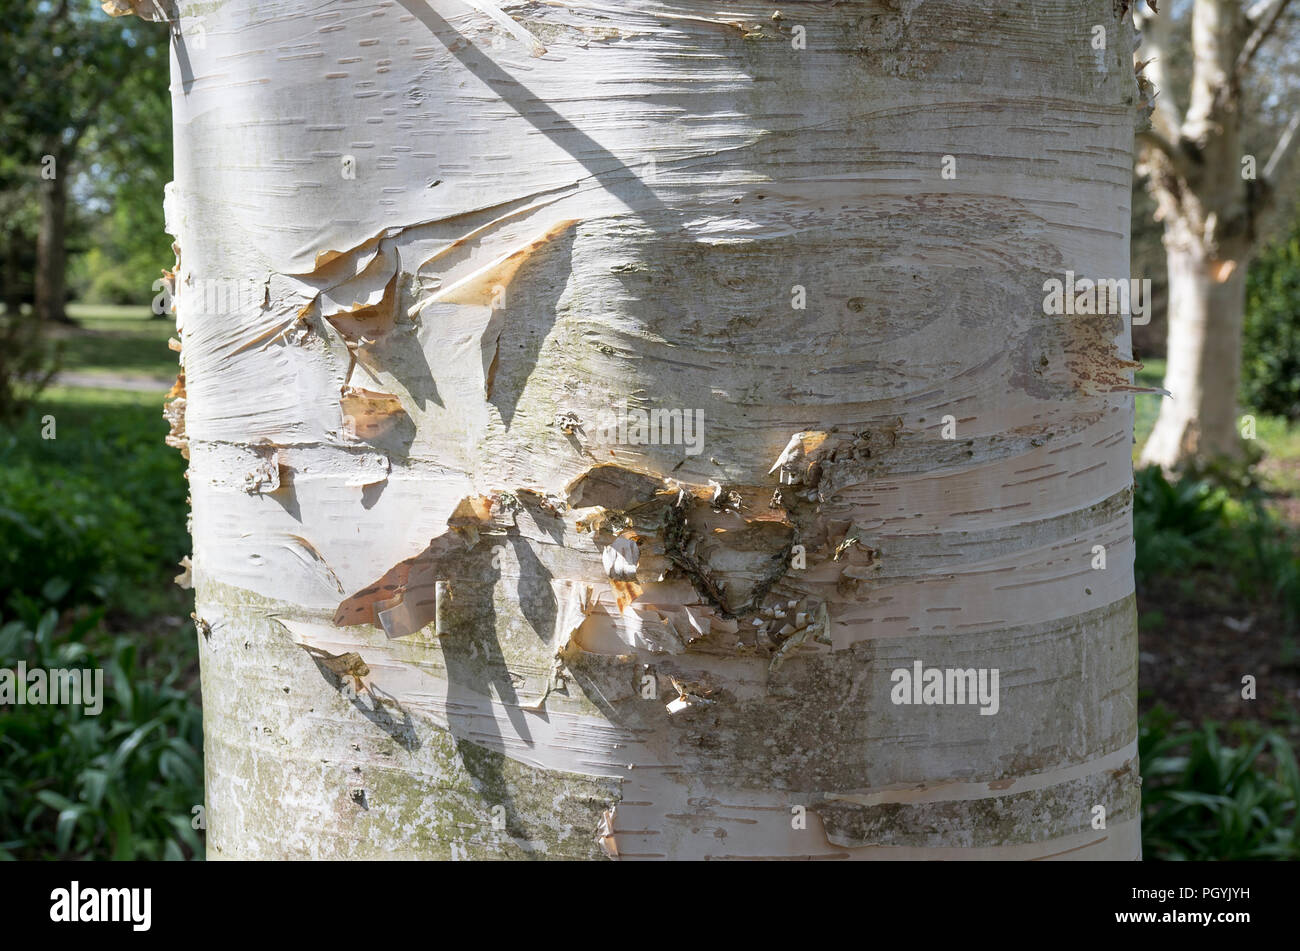 Dettaglio rivelato in close-up del tronco e la corteccia di un argento betulla in Inghilterra, Regno Unito Foto Stock